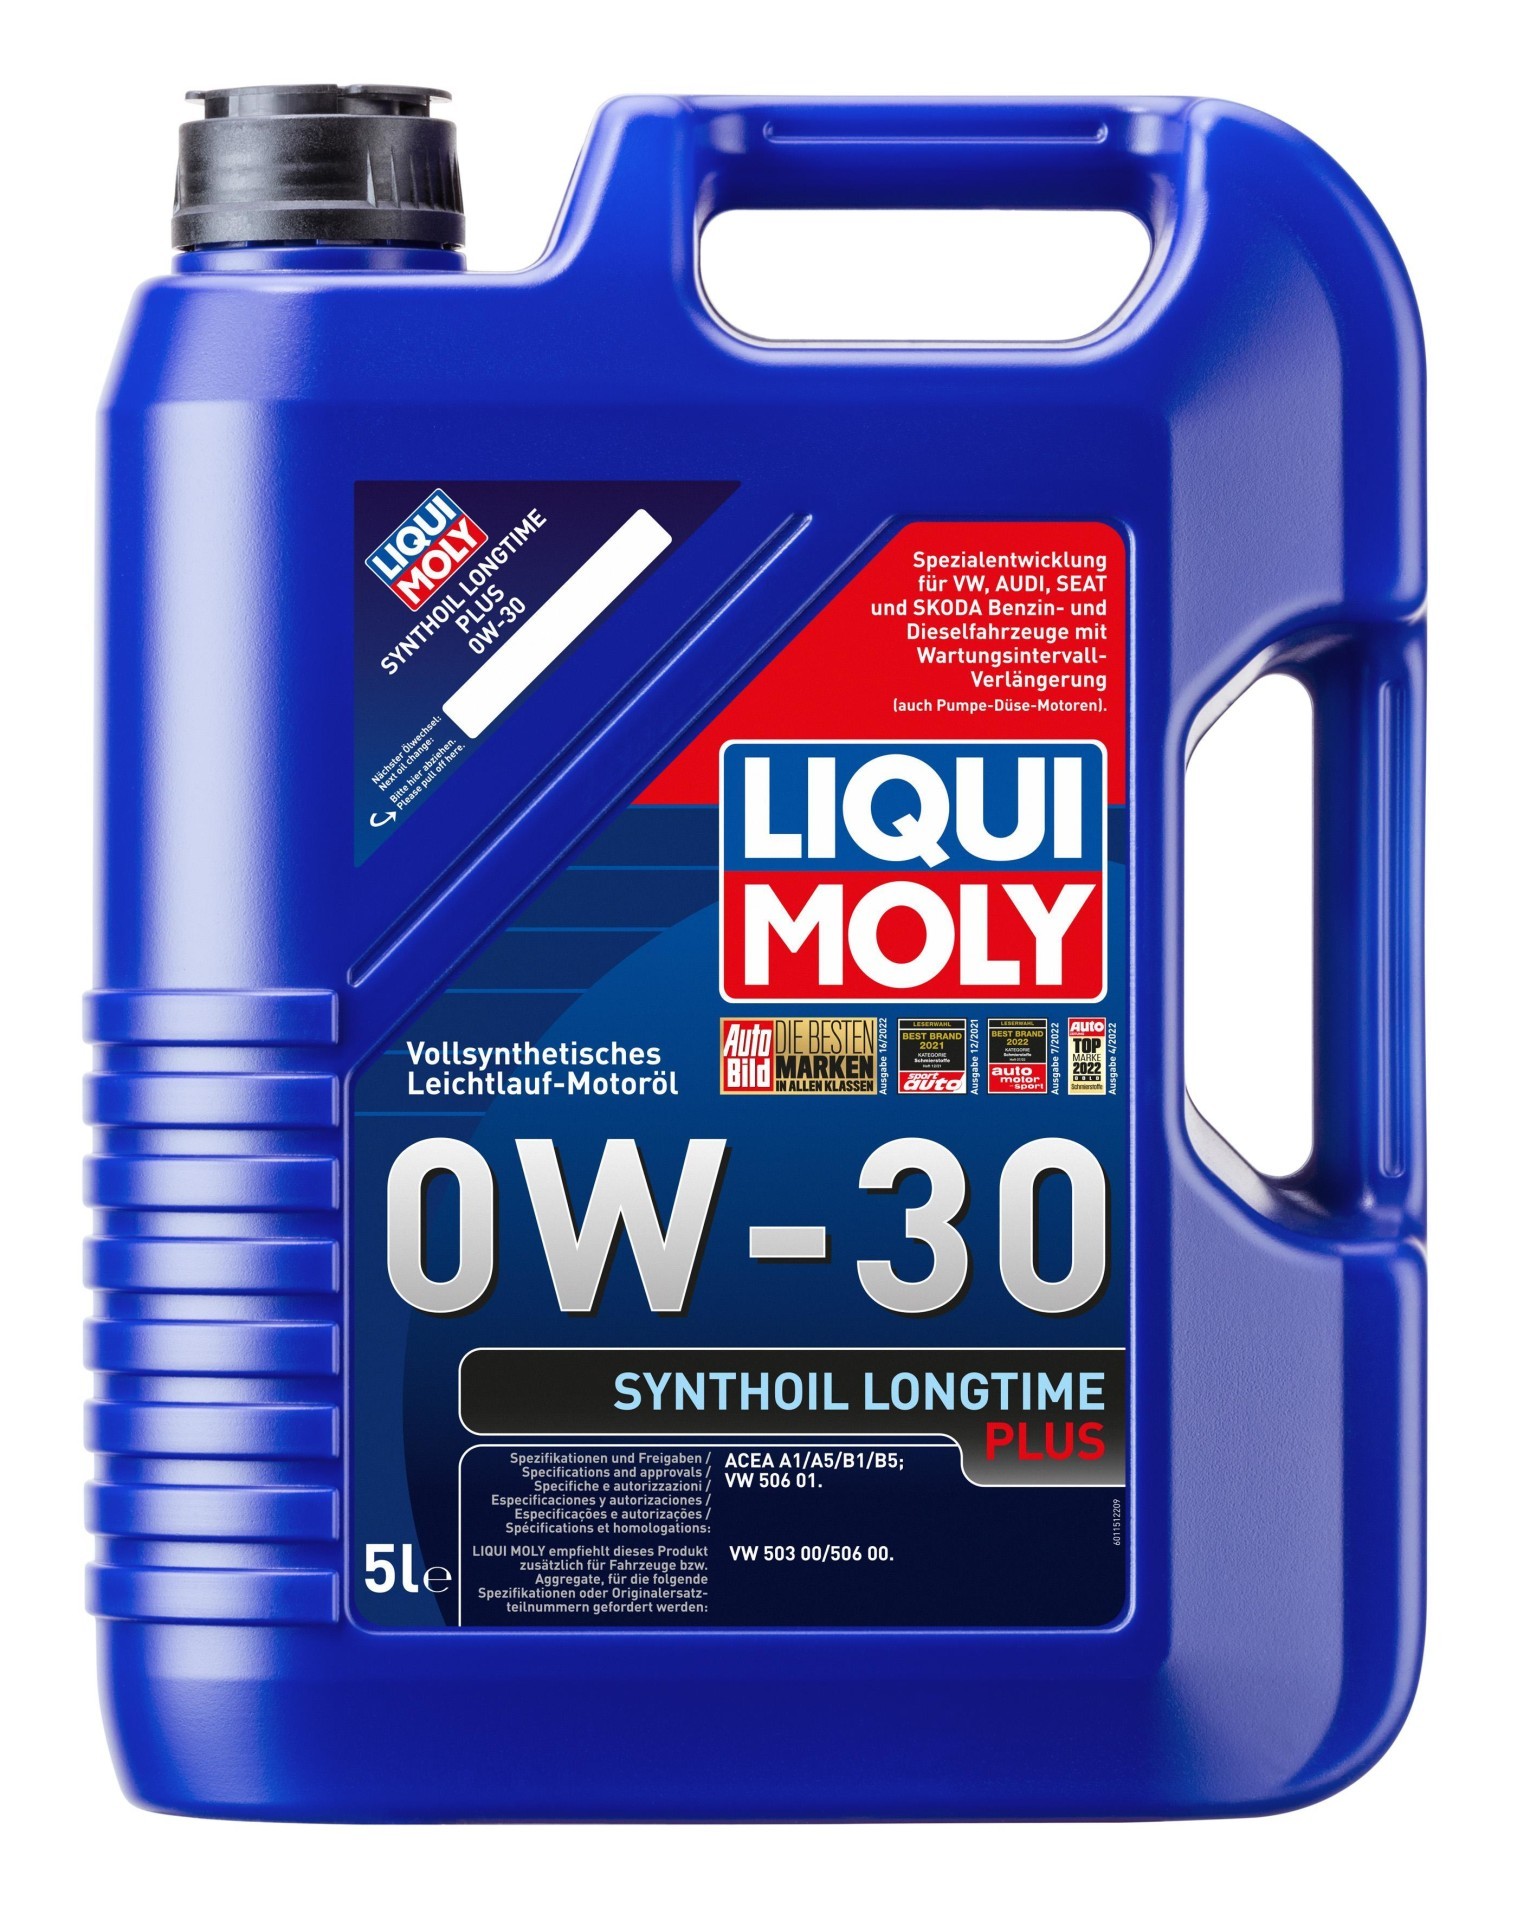 LIQUI MOLY Motoröl Synthoil Longtime Plus 0W-30 5 L (1151)